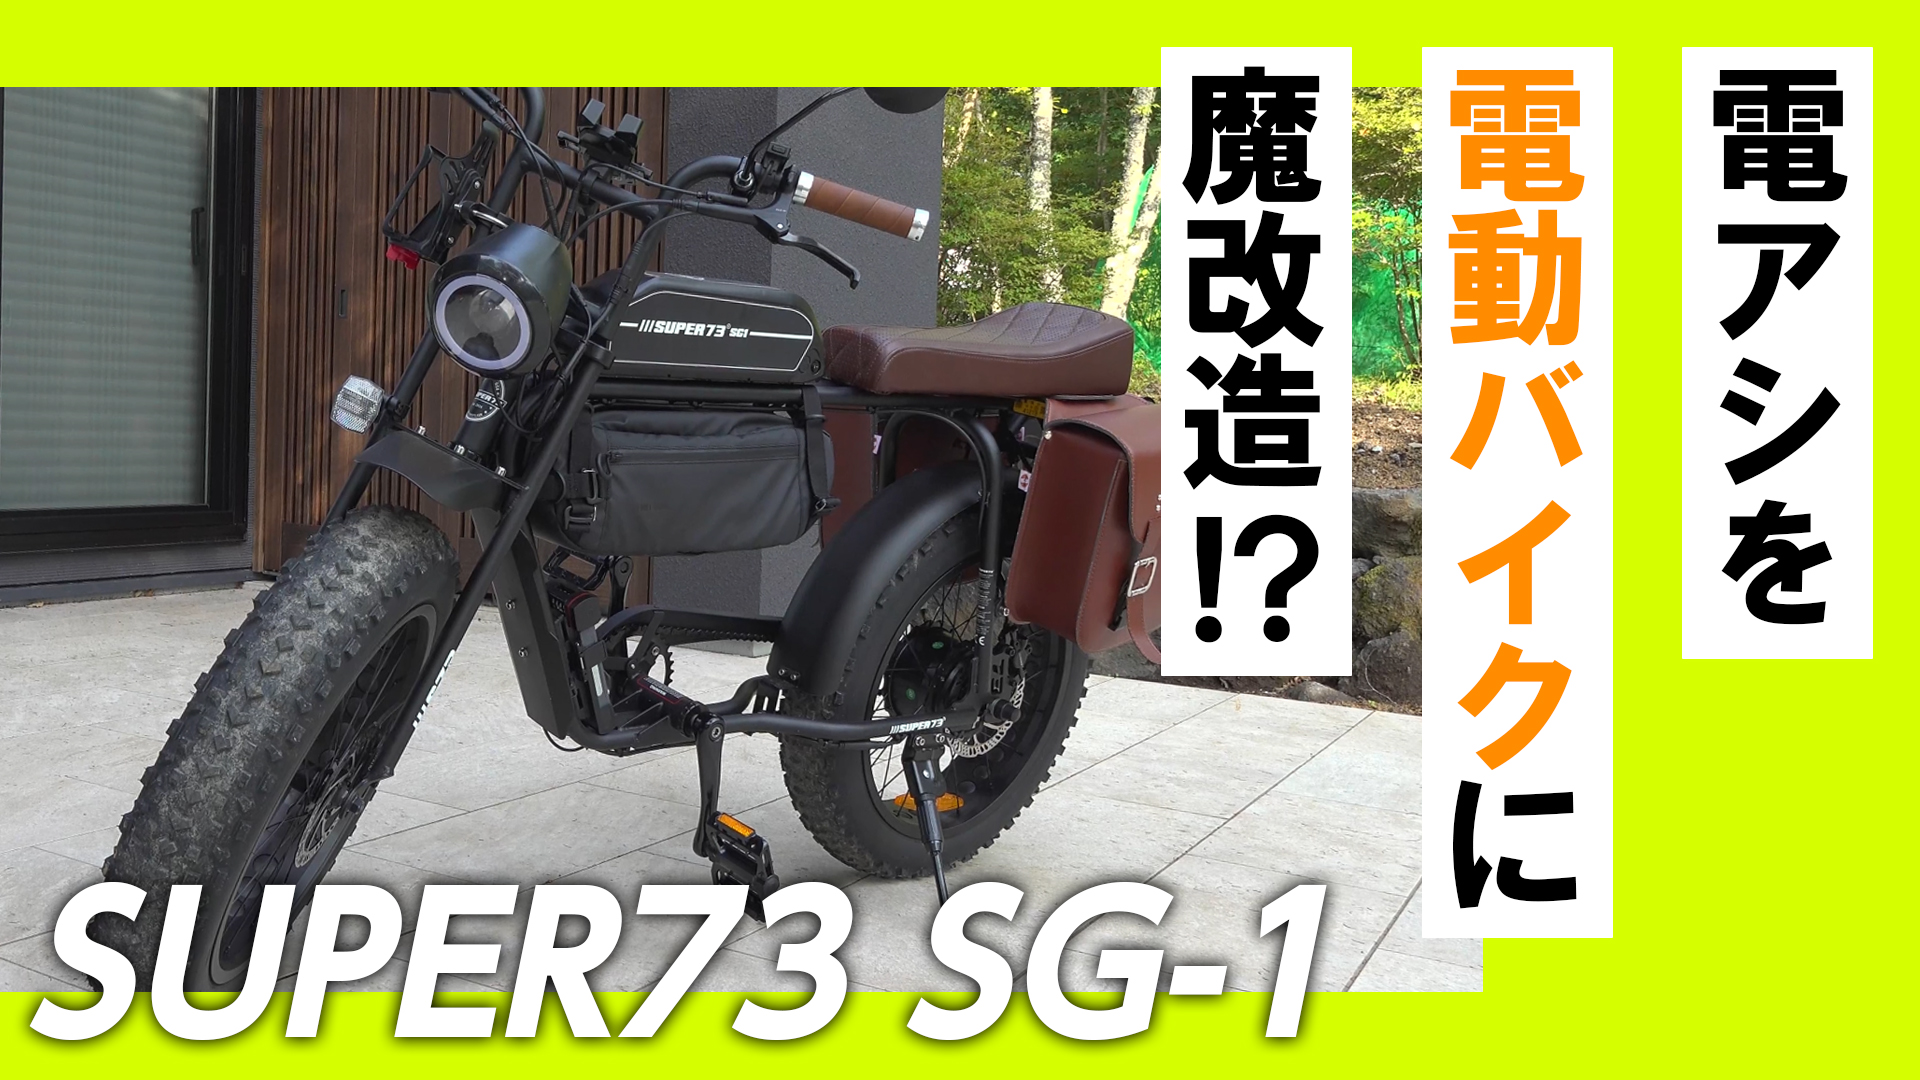 与え 新品 Super73 リミッターカット オリジナル日本語説明書付 